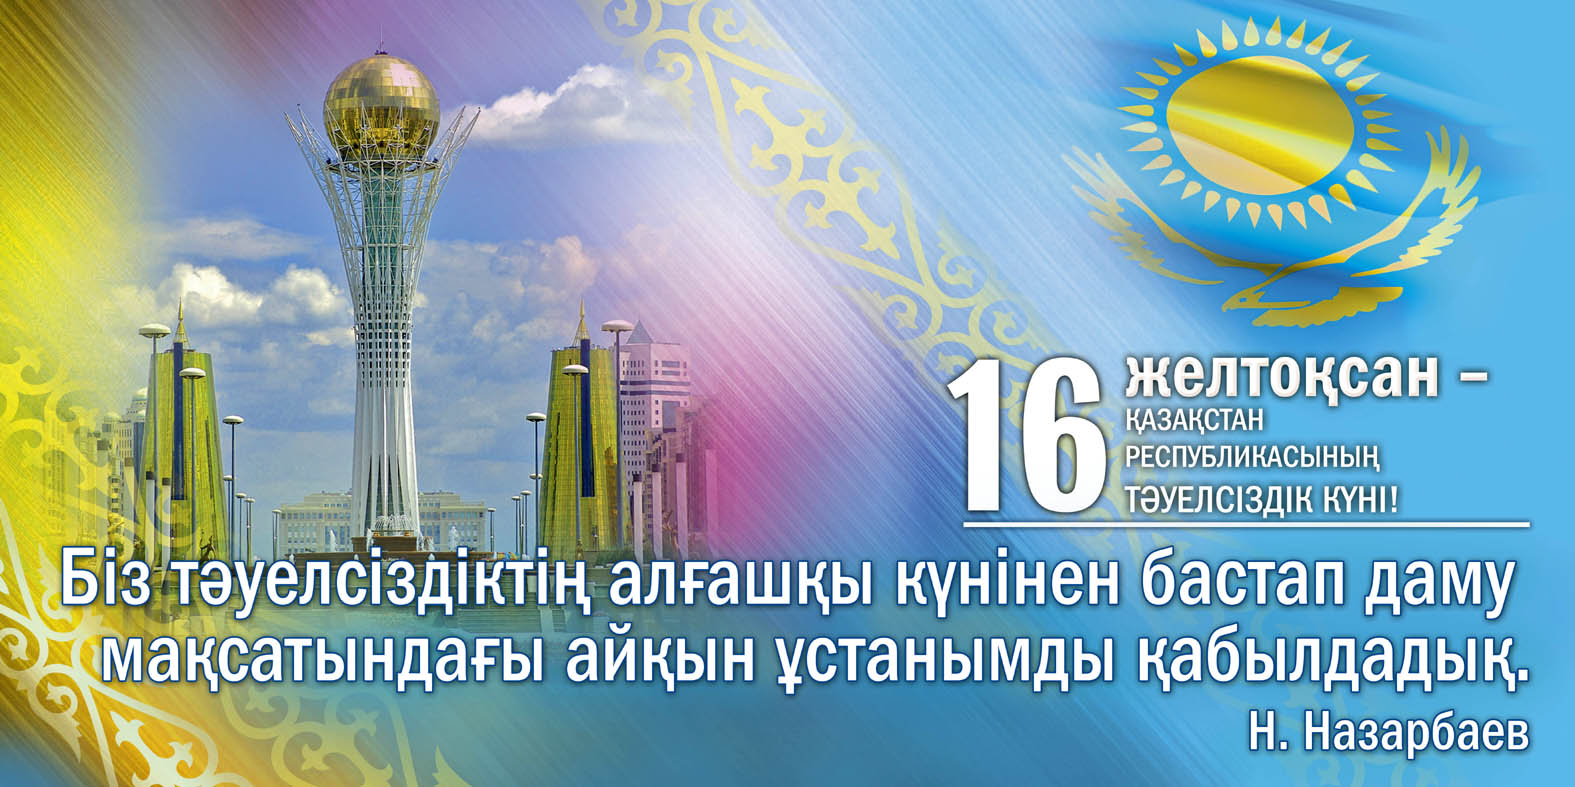 Поздравляем с днем независимости Казахстана!